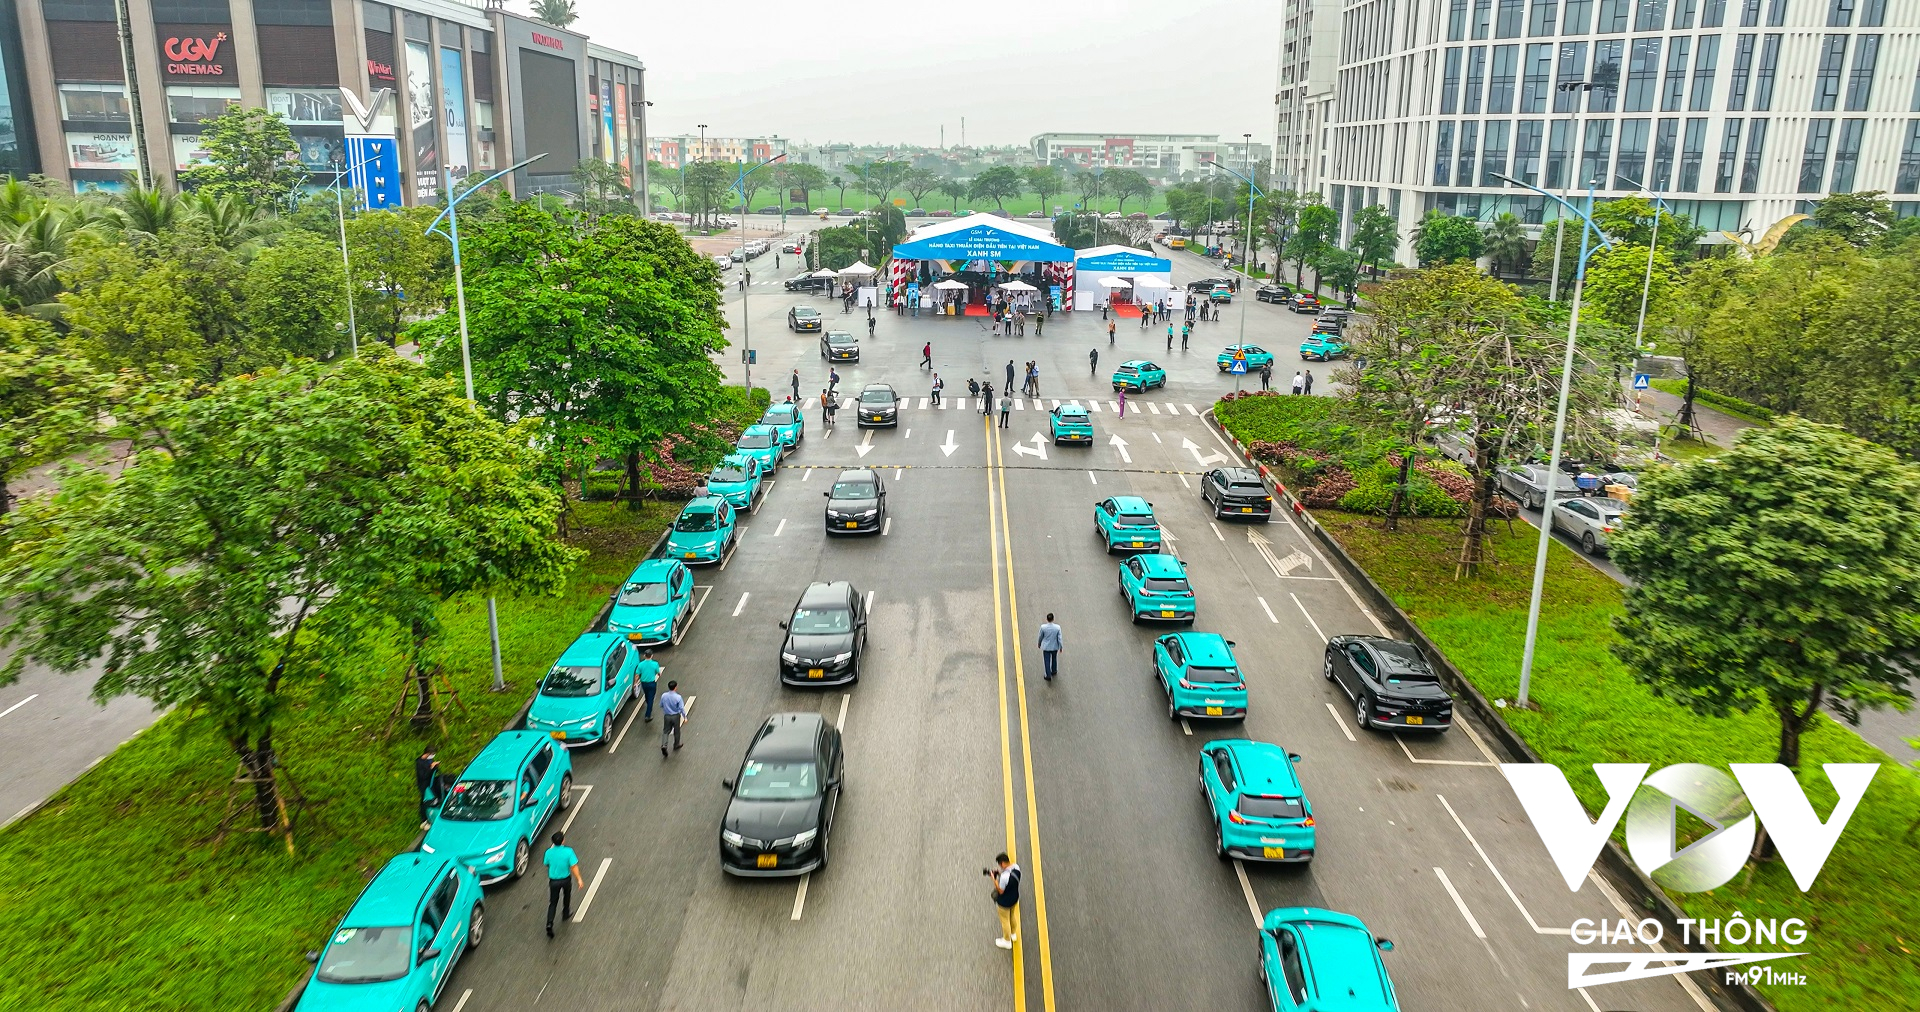 Kể từ nay, người dân Thủ đô Hà Nội có thể đặt taxi Xanh SM qua số tổng đài toàn quốc 1900 2088 như taxi truyền thống hoặc qua ứng dụng Taxi Xanh SM (trên App Store và Google Play Store) như các hãng xe công nghệ. Hoặc cũng có thể đón xe trực tiếp tại tất cả các trung tâm thương mại Vincom, các địa điểm công cộng trong thành phố hoặc trực tiếp vẫy xe trên đường.